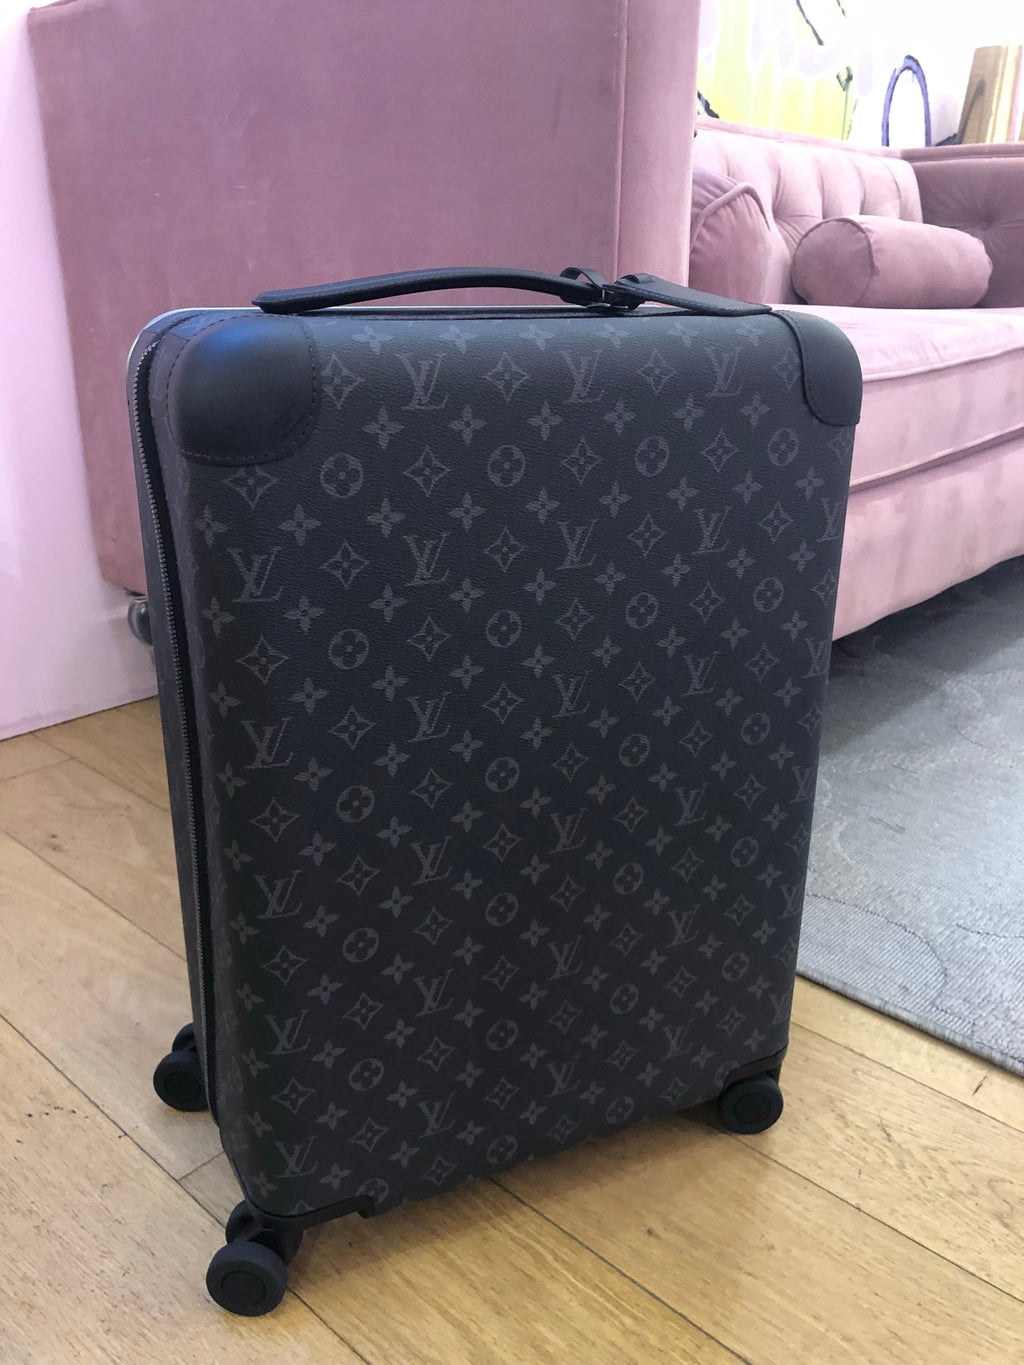 Louis Vuitton Horizon 50 Luggage